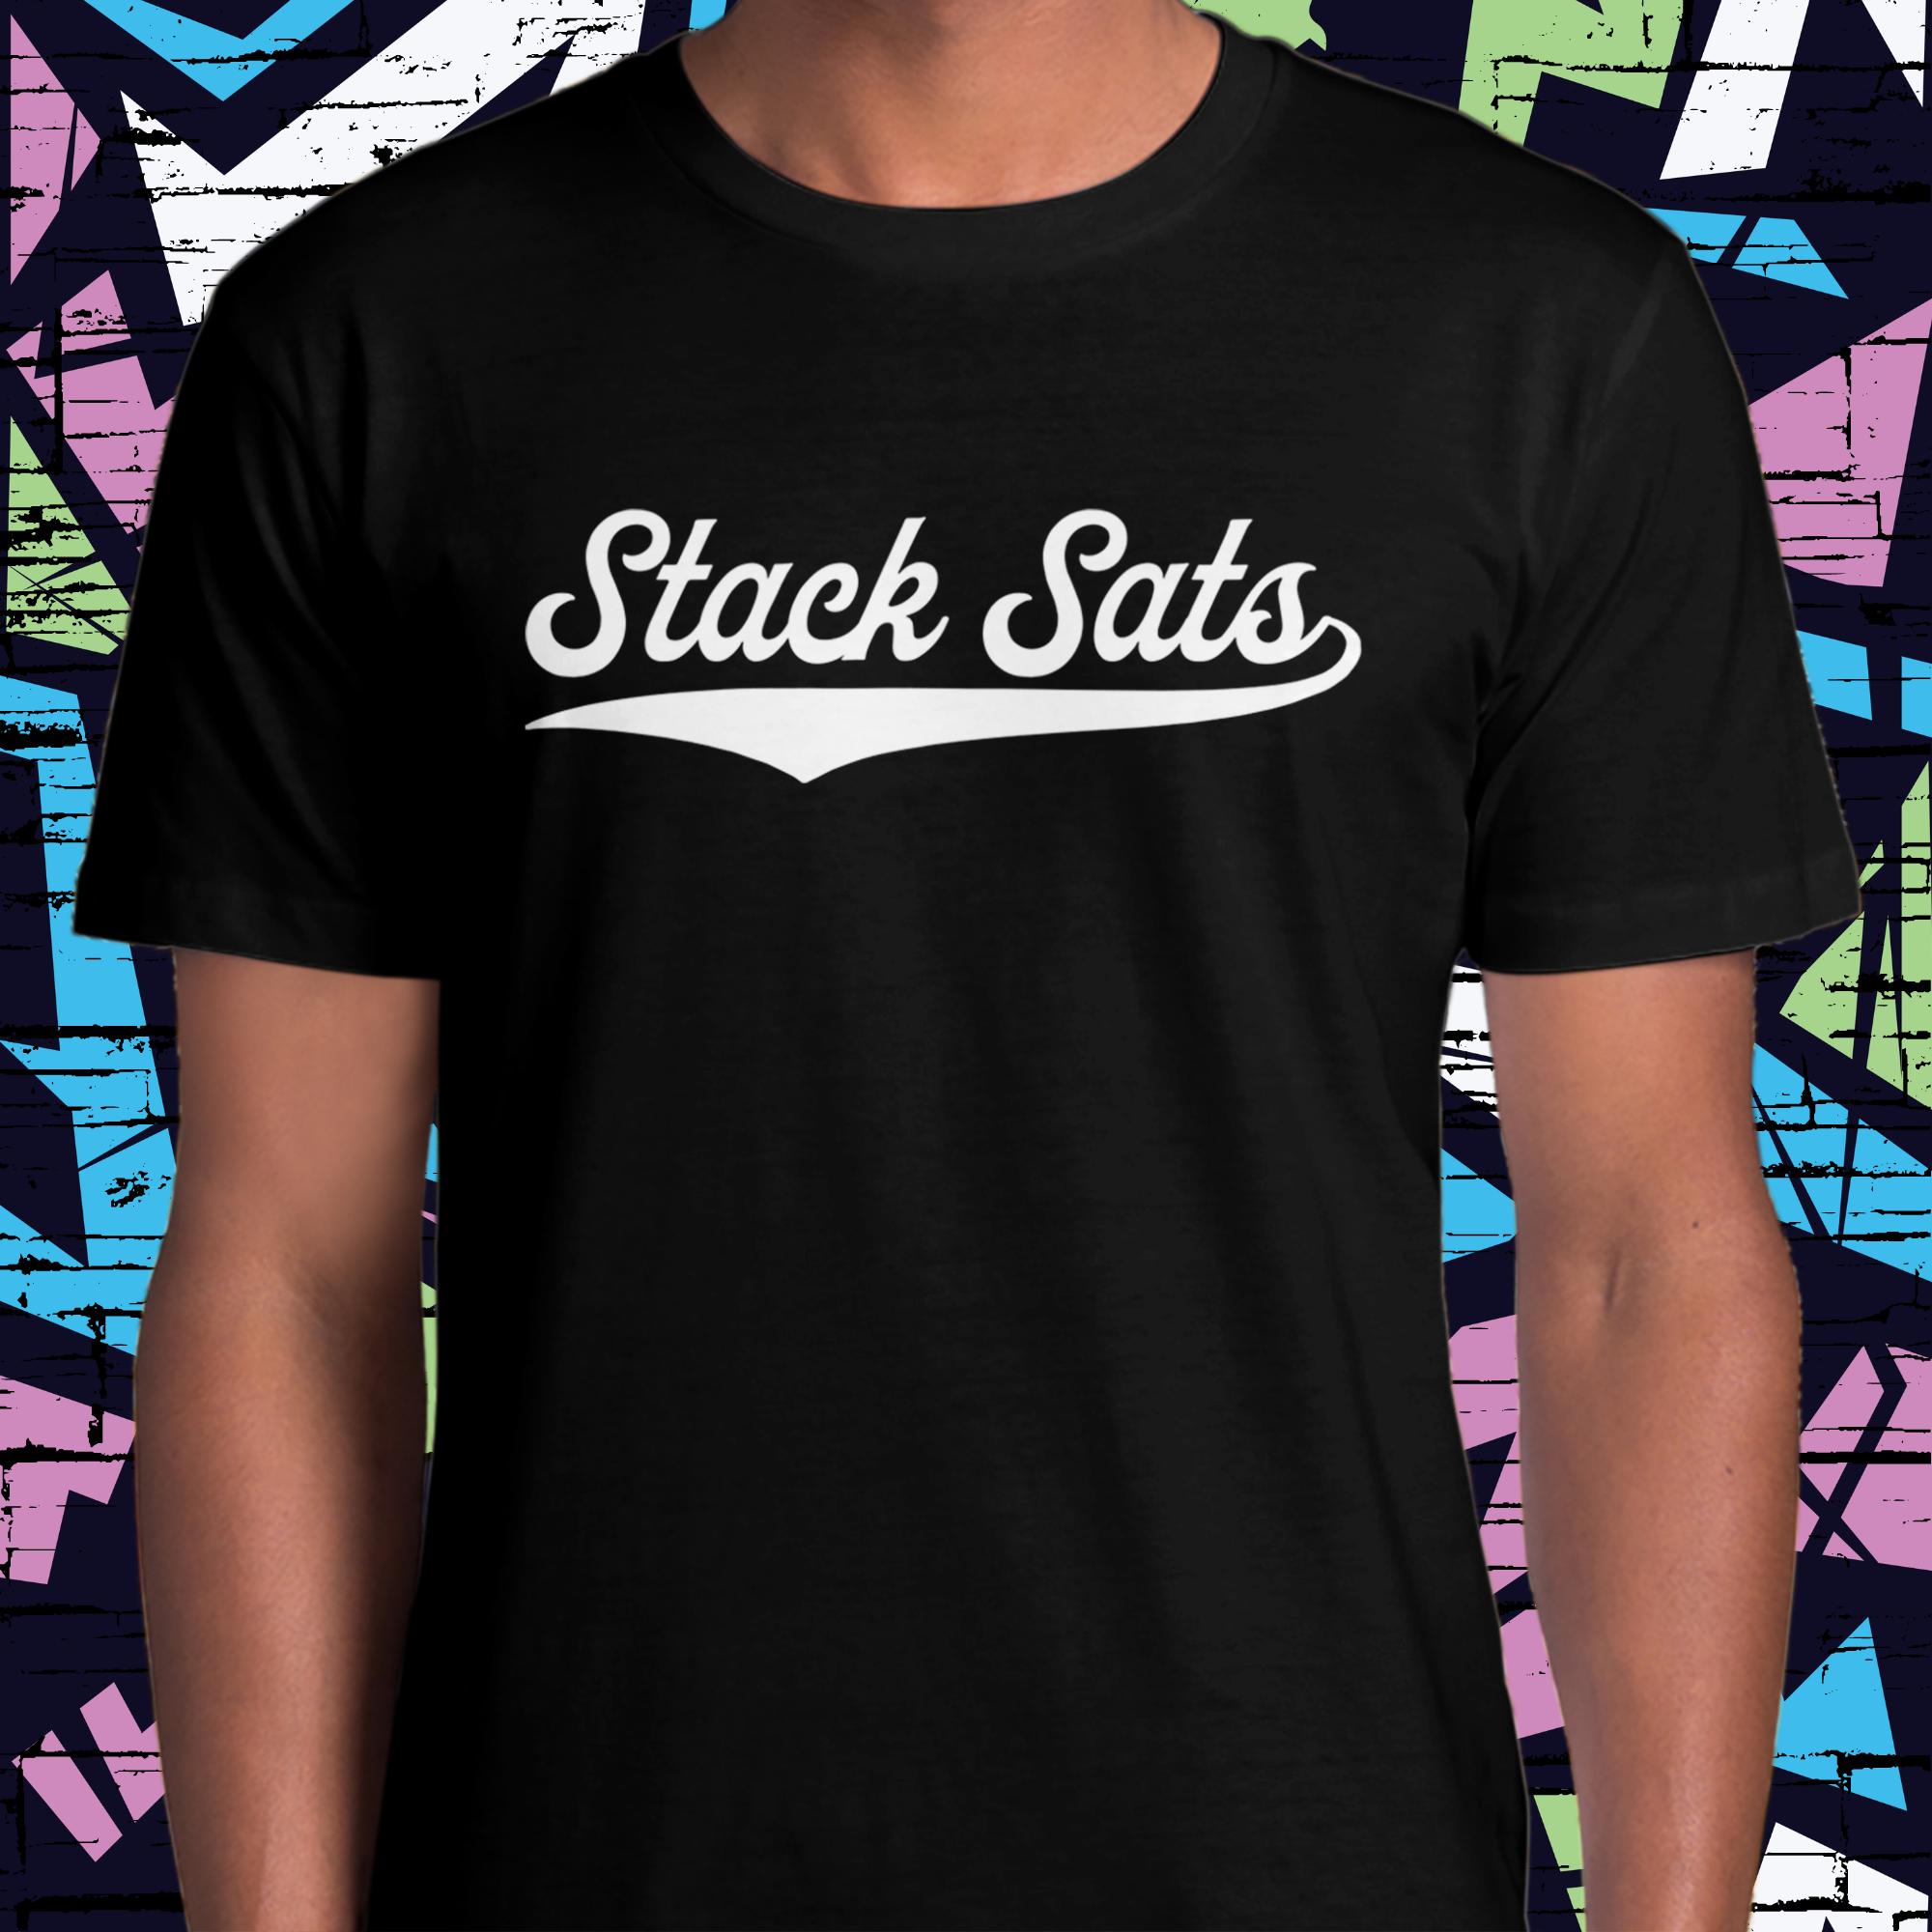 Bitcoin Apparel - Stack Sats T-Shirt. Close up view.